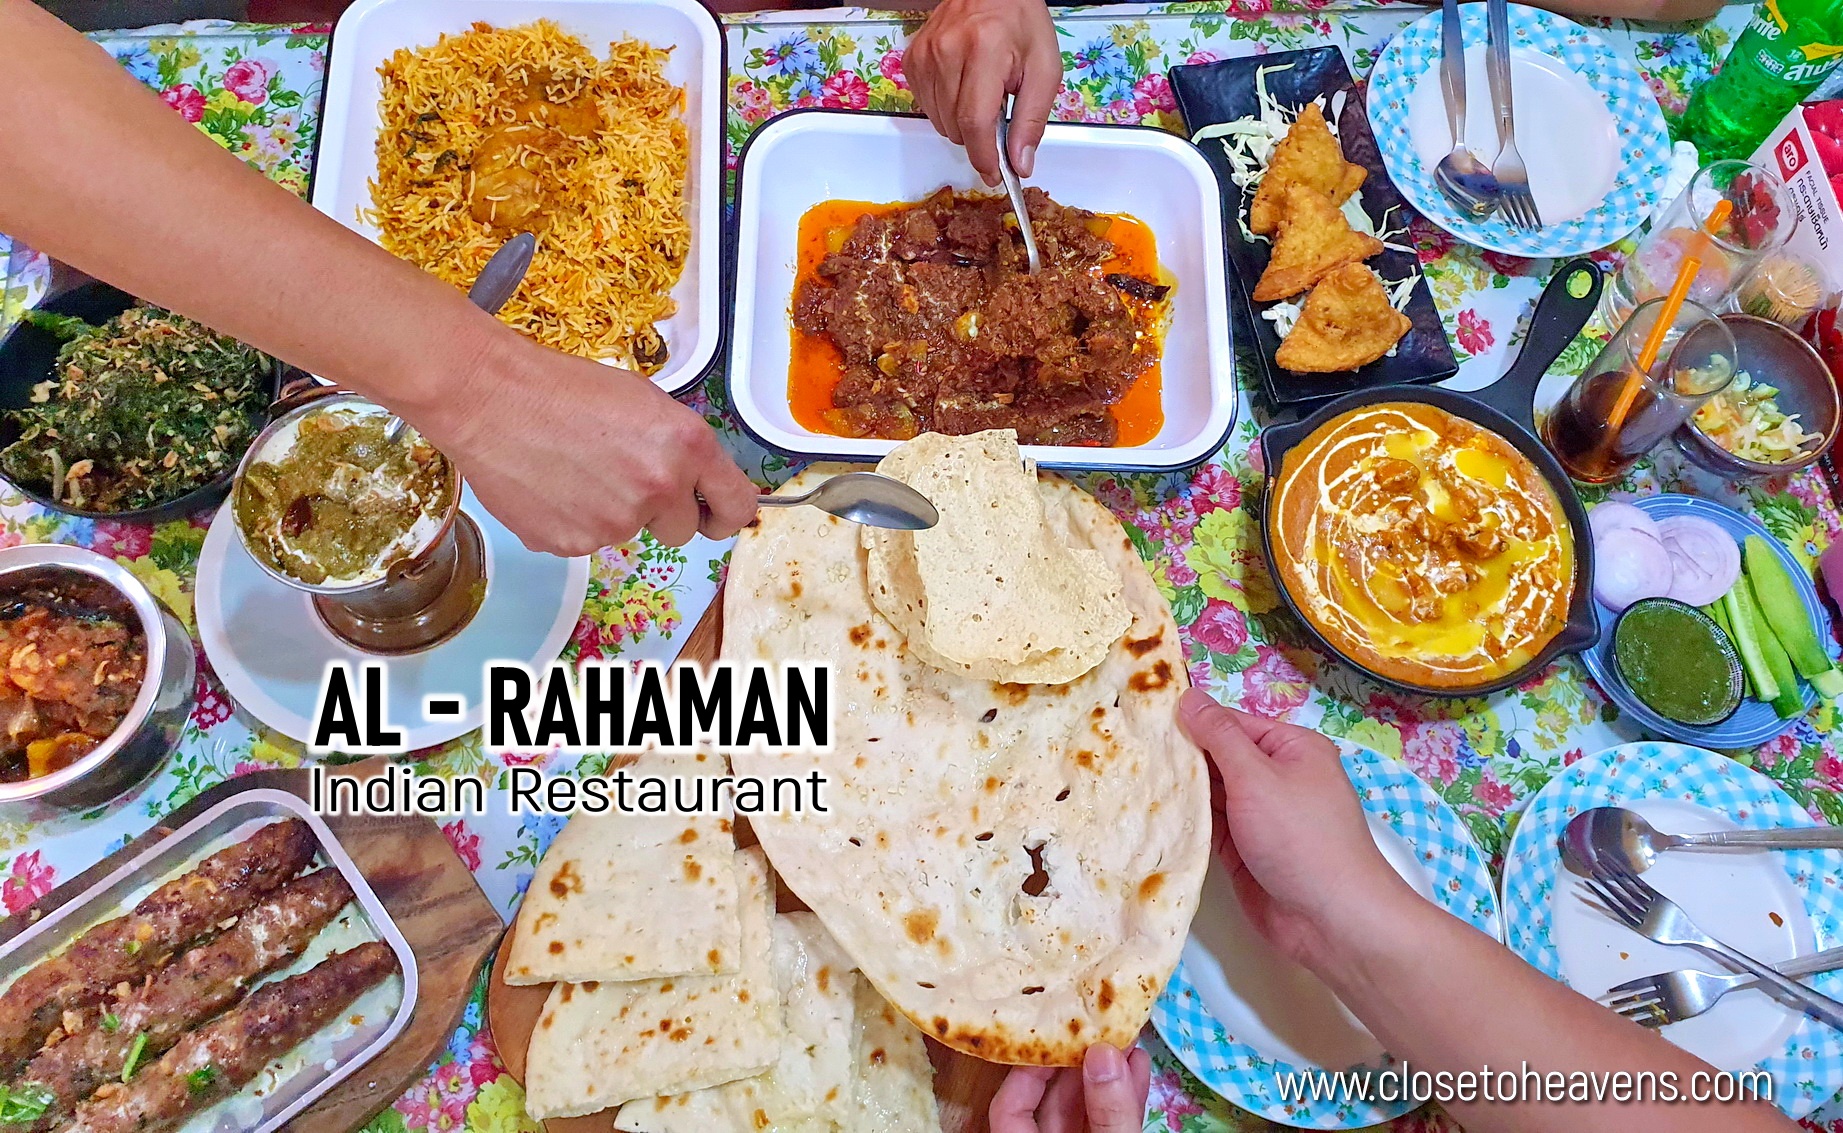 Al-Rahaman ร้านอาหารอินเดีย ที่ต้องต่อคิว